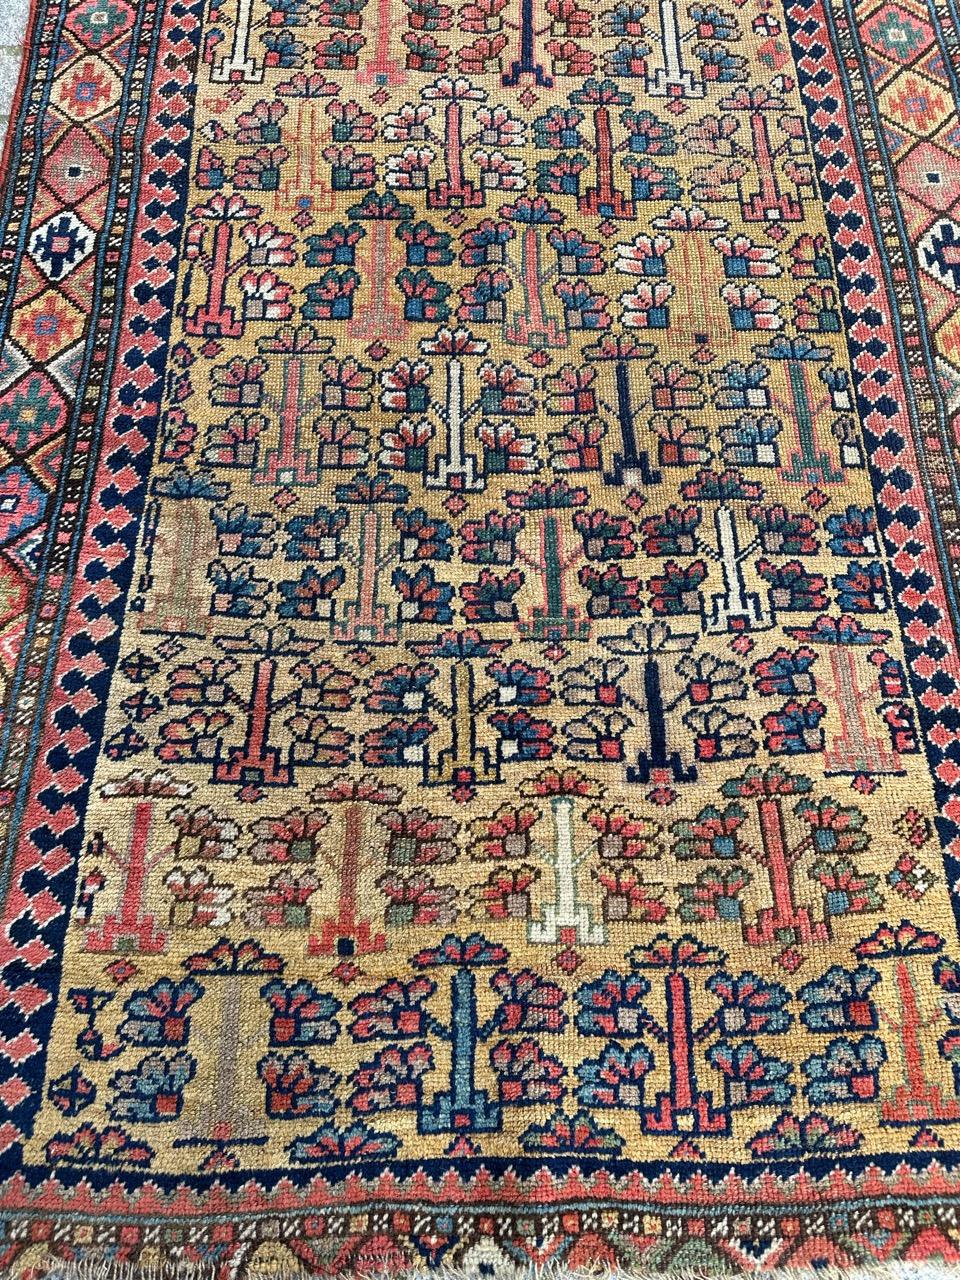 Très décoratif et antique tapis caucasien ou kurde du milieu du 19ème siècle avec de beaux motifs stylisés et de belles couleurs naturelles, entièrement noué à la main avec de la laine sur une base de laine.

✨✨✨
